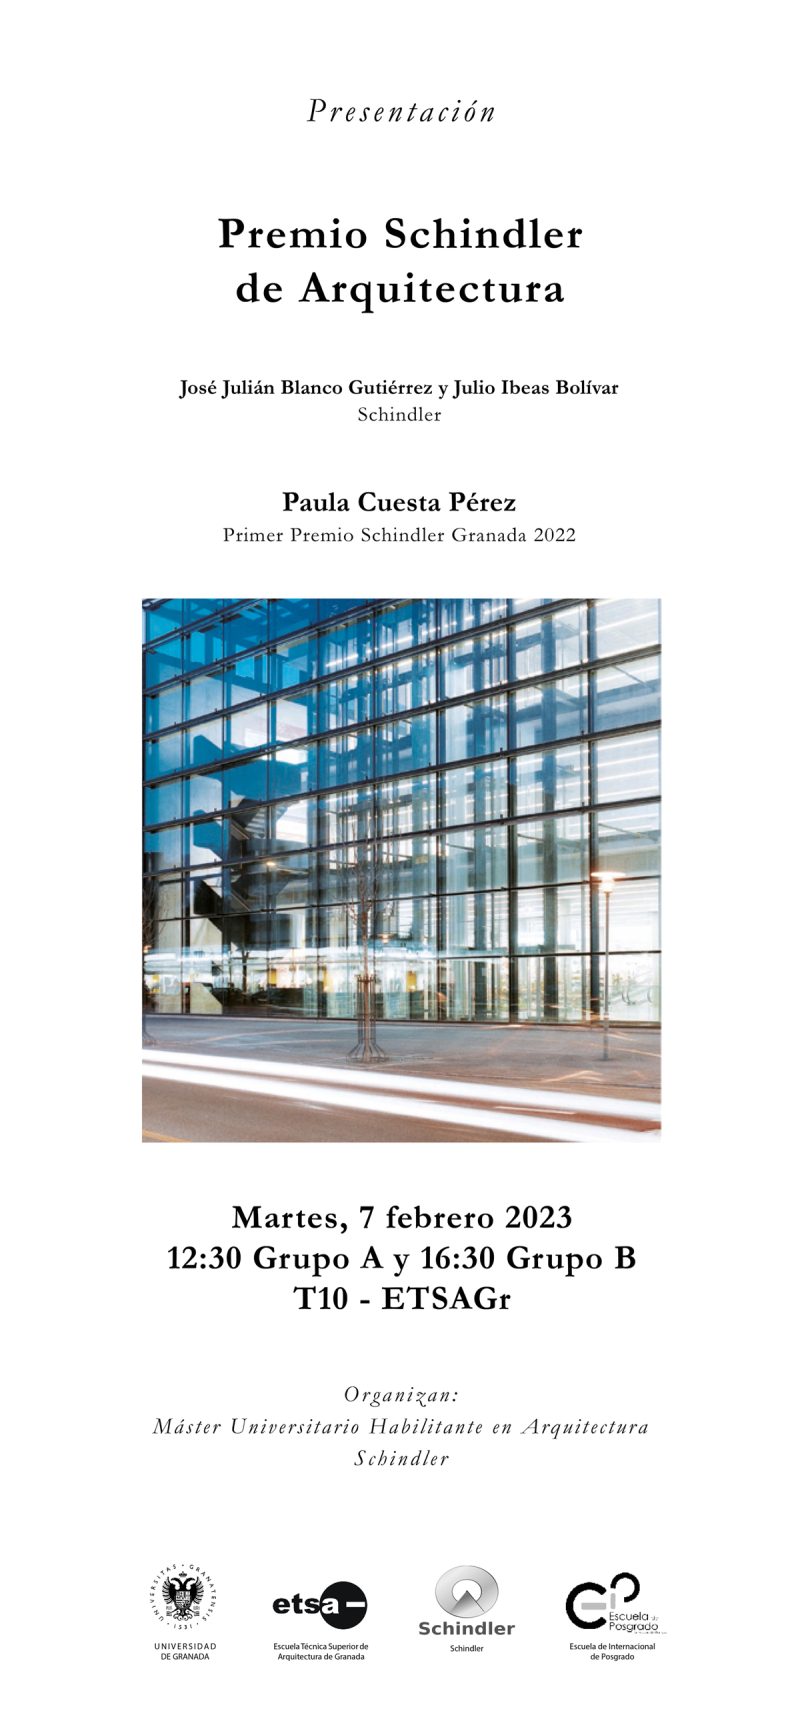 Cartel de la Presentación del Premio Schindler de Arquitectura 2023